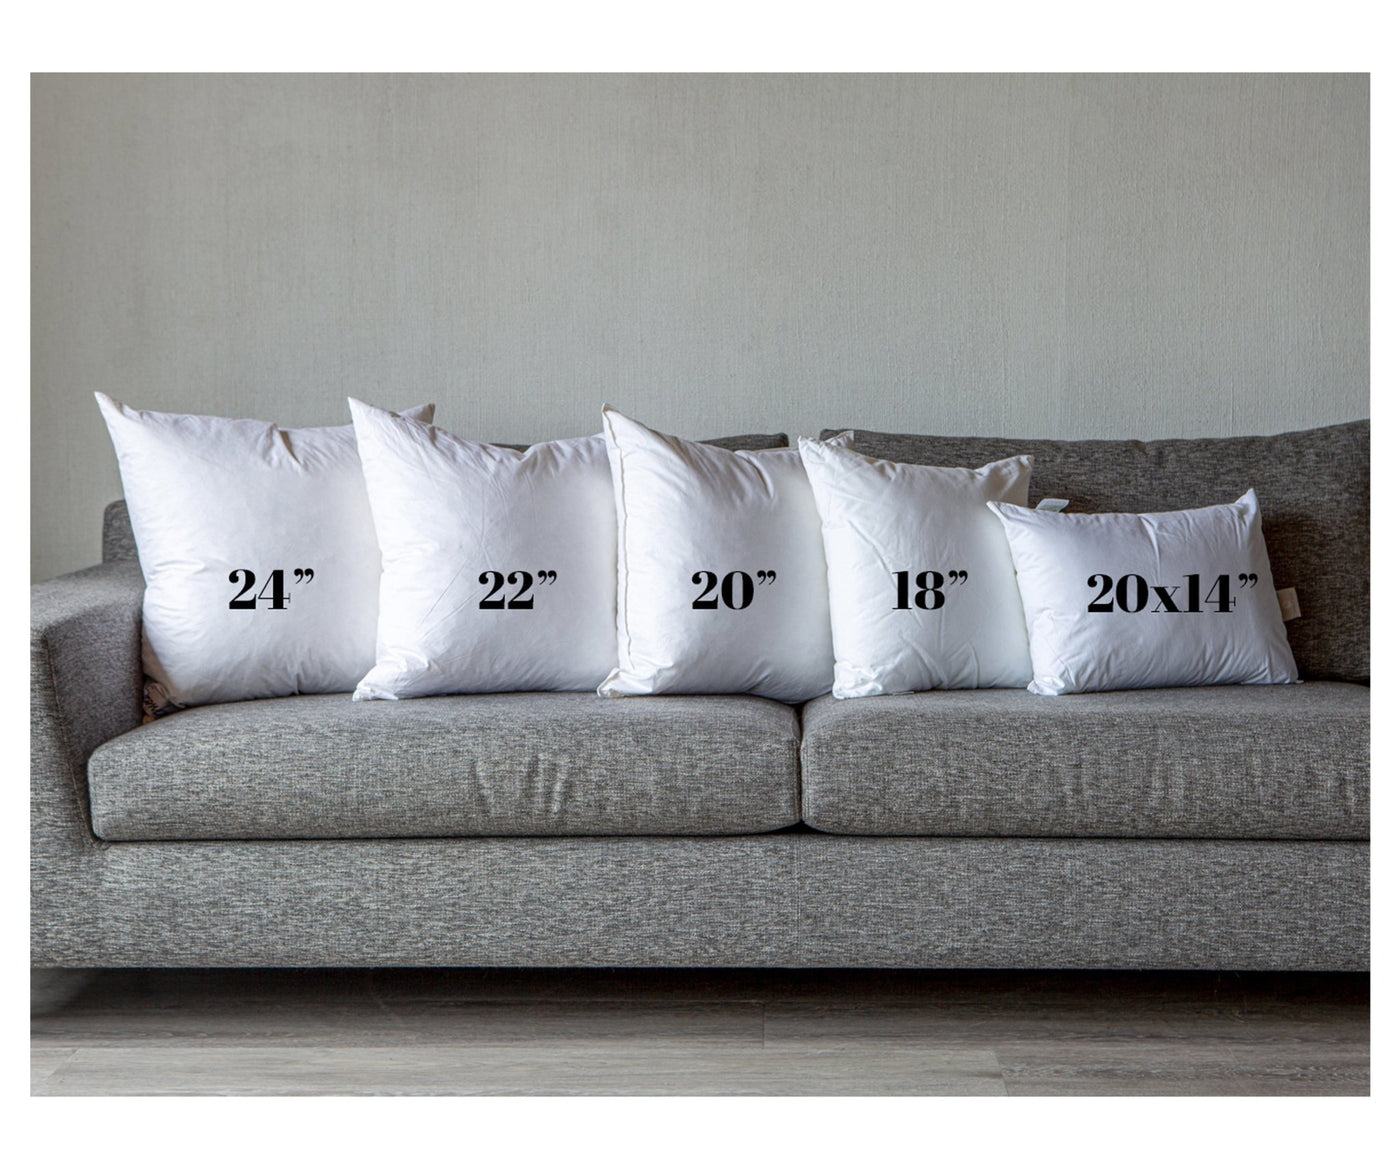 20" Toss Pillow (Made to Order) - Pillow